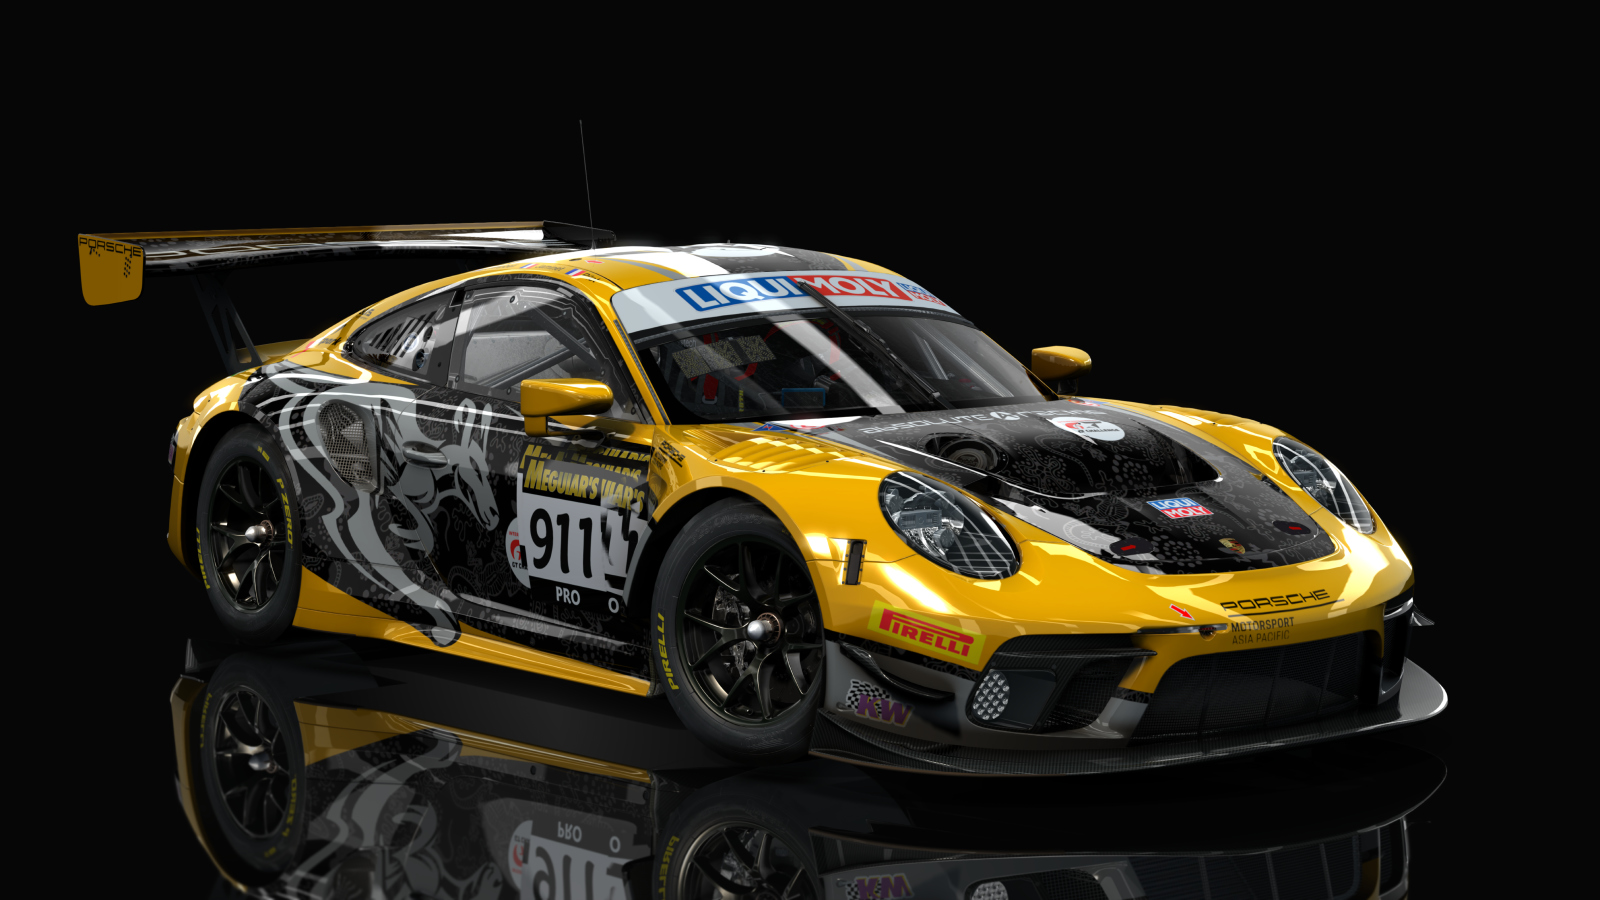 Porsche 991 GT3 R 2020, skin Absolute_Racing_#912_Bathurst_2020